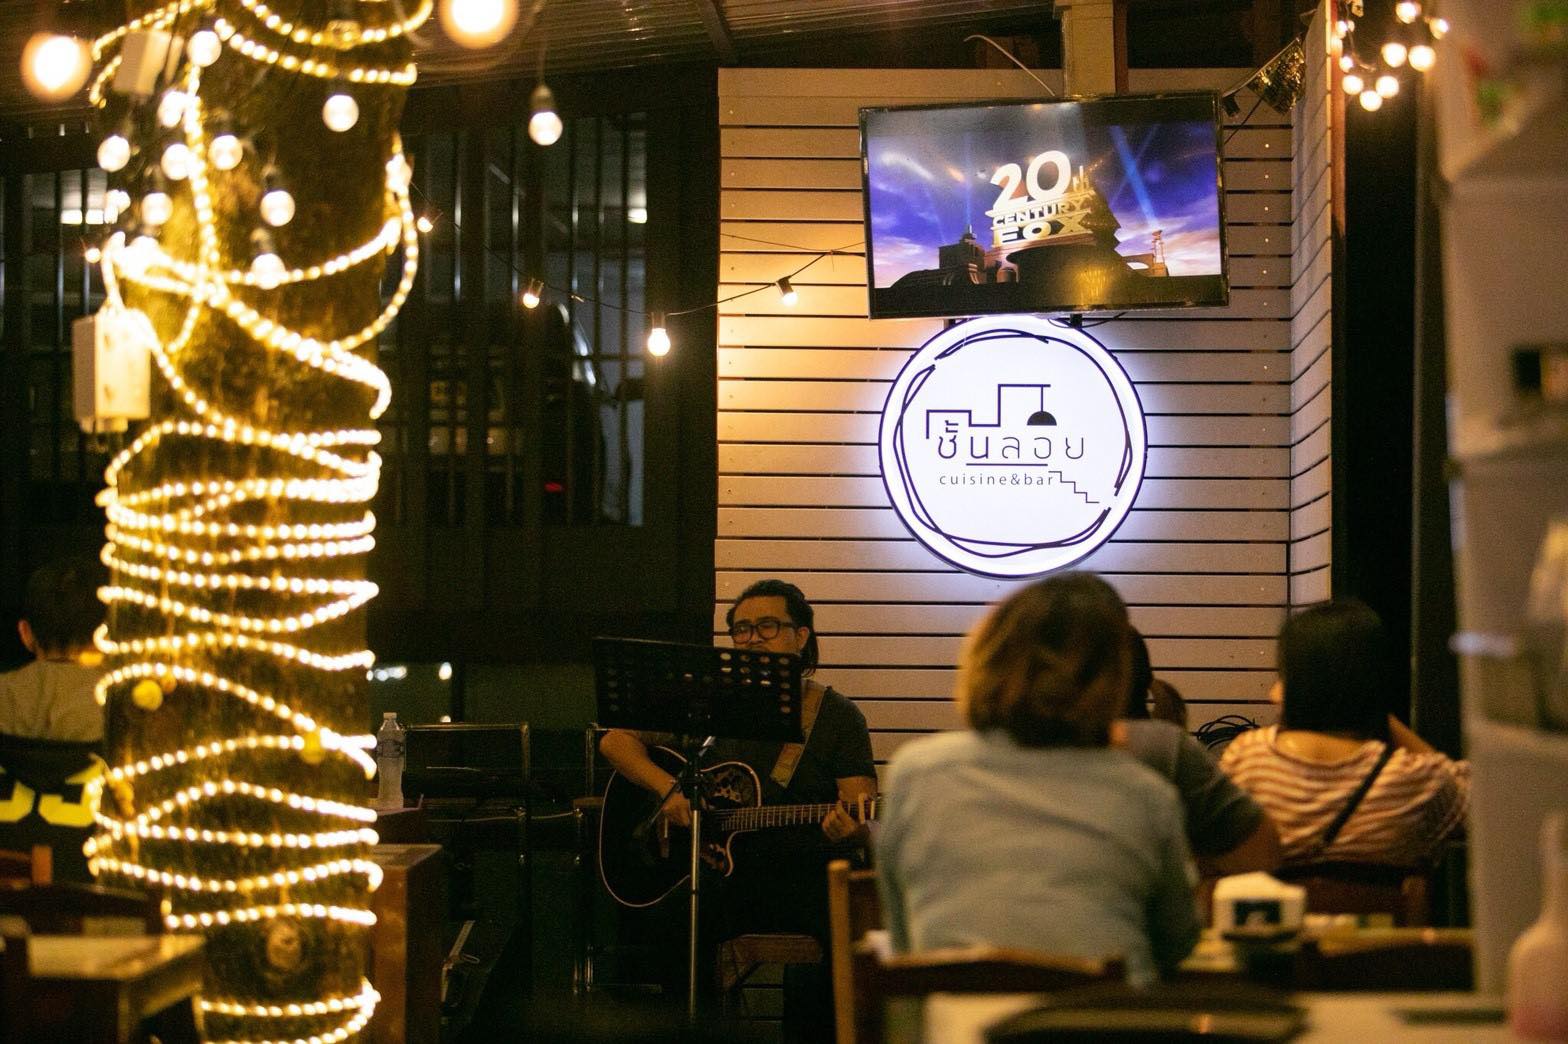 ชั้นลอย Cuisine & Bar (ชั้นลอย Cuisine & Bar) : กรุงเทพมหานคร (Bangkok)